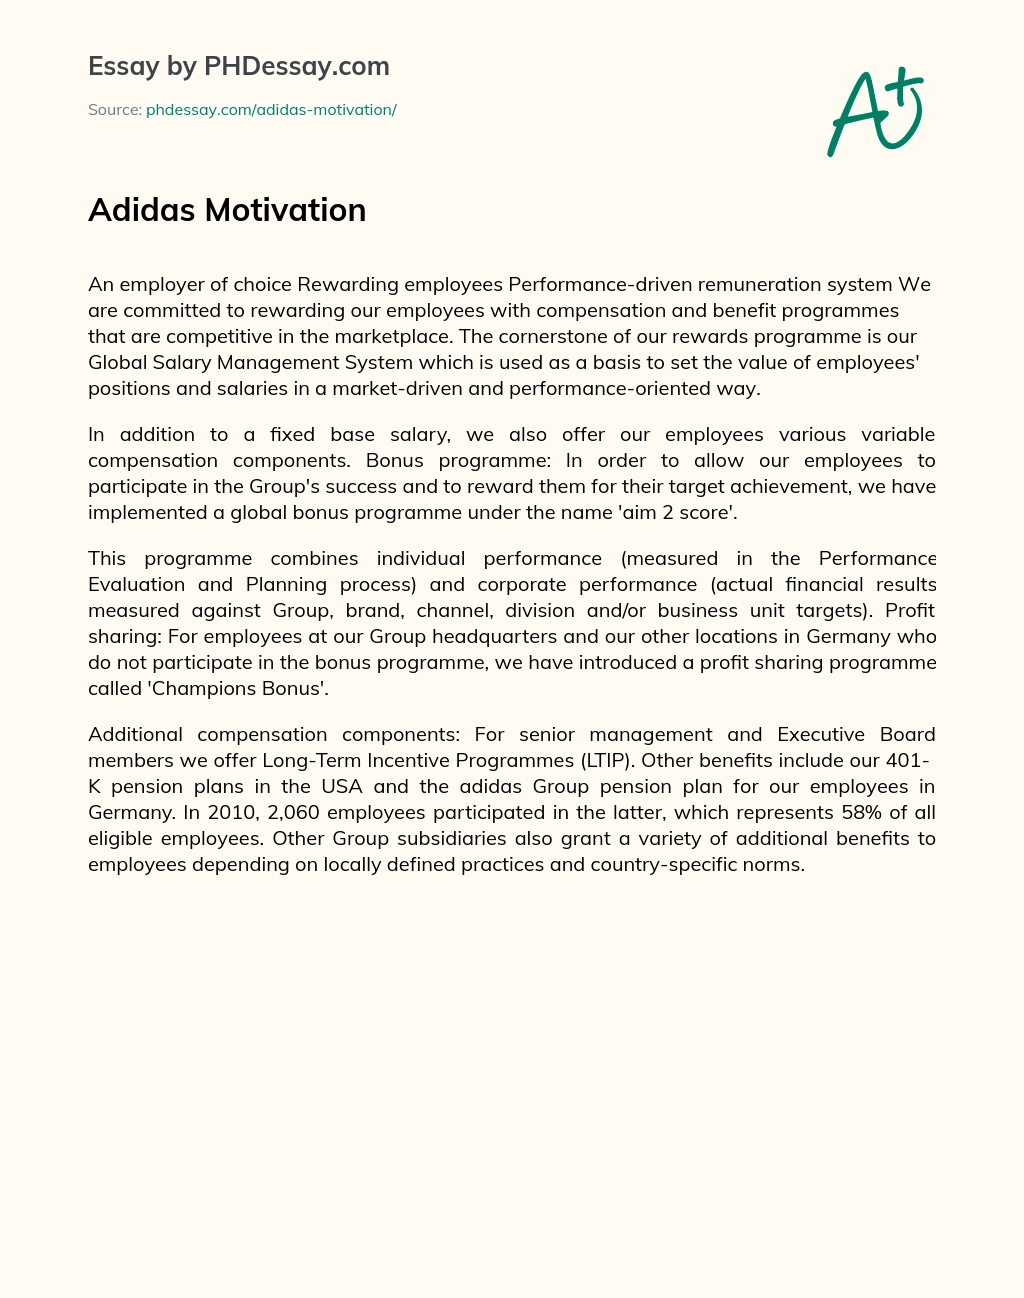 Adidas Motivation essay